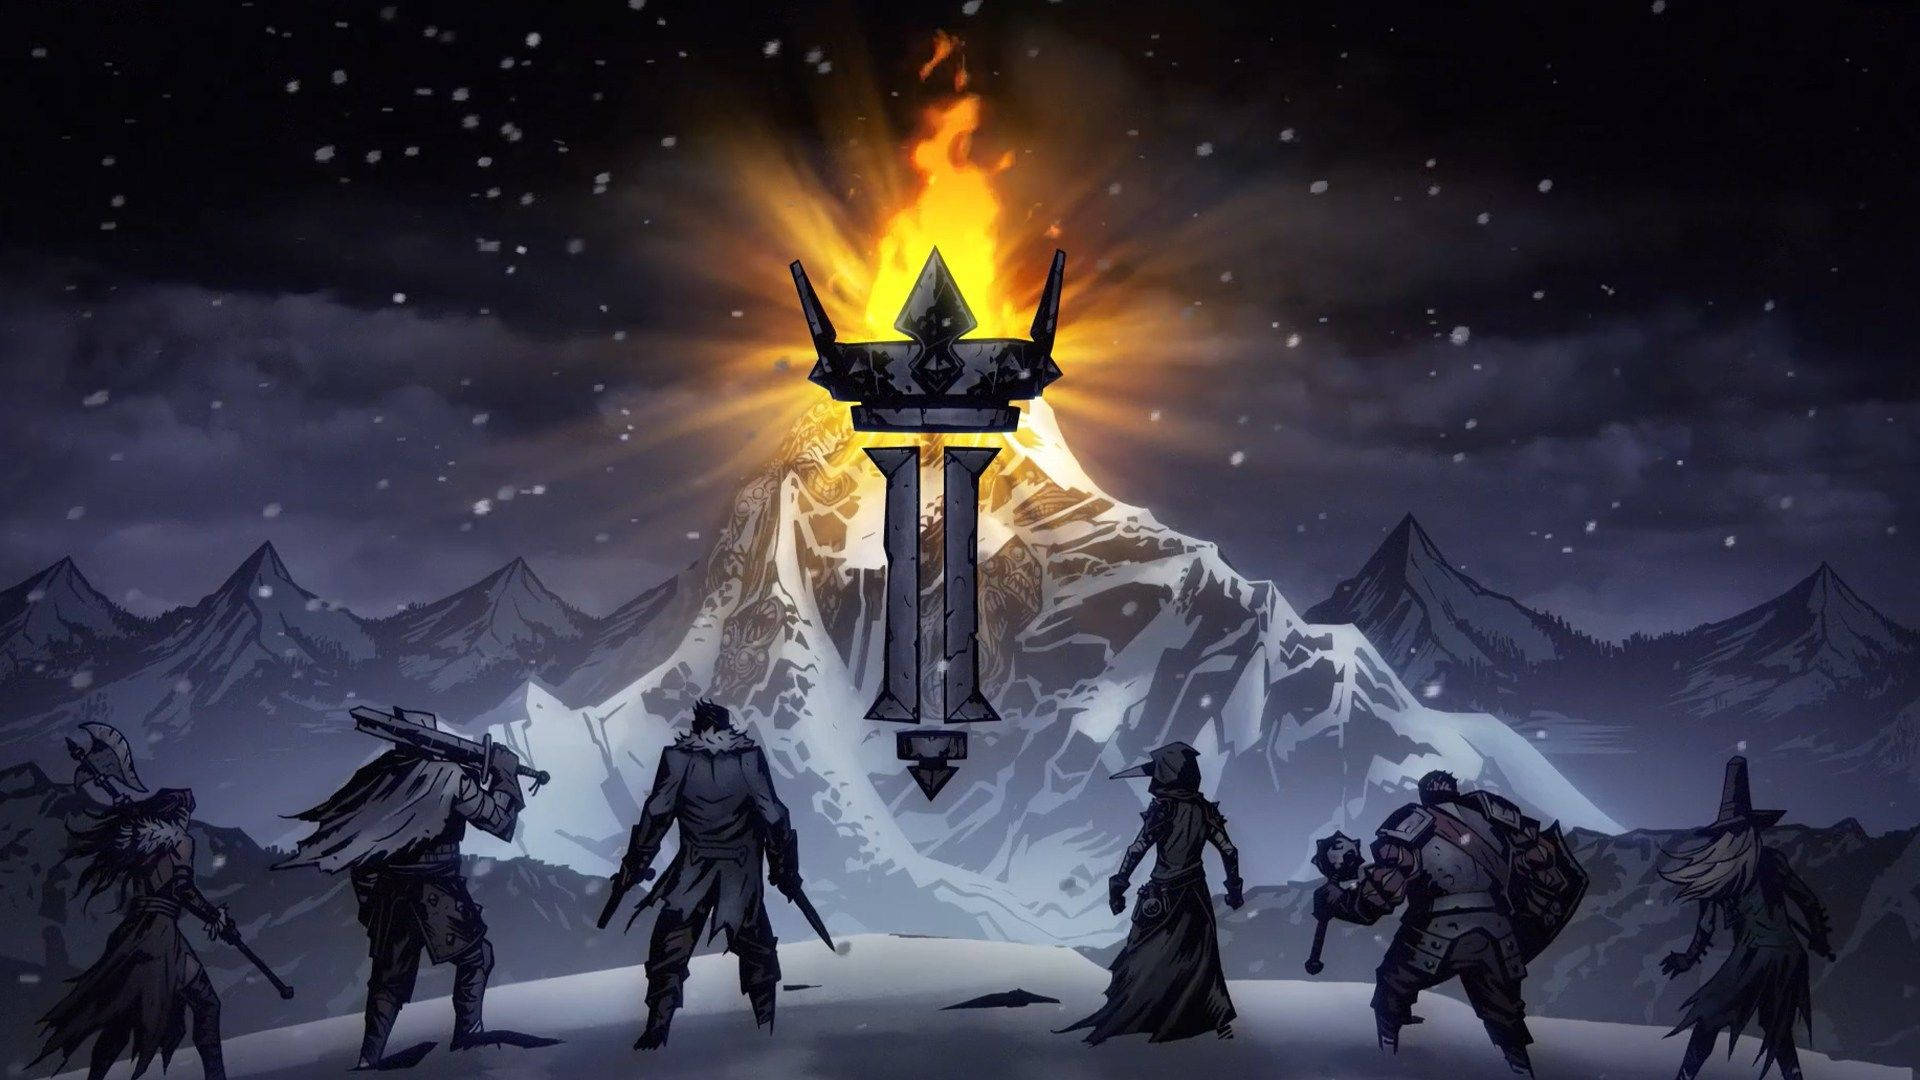 Darkest Dungeon 2 Snow Mountain Background